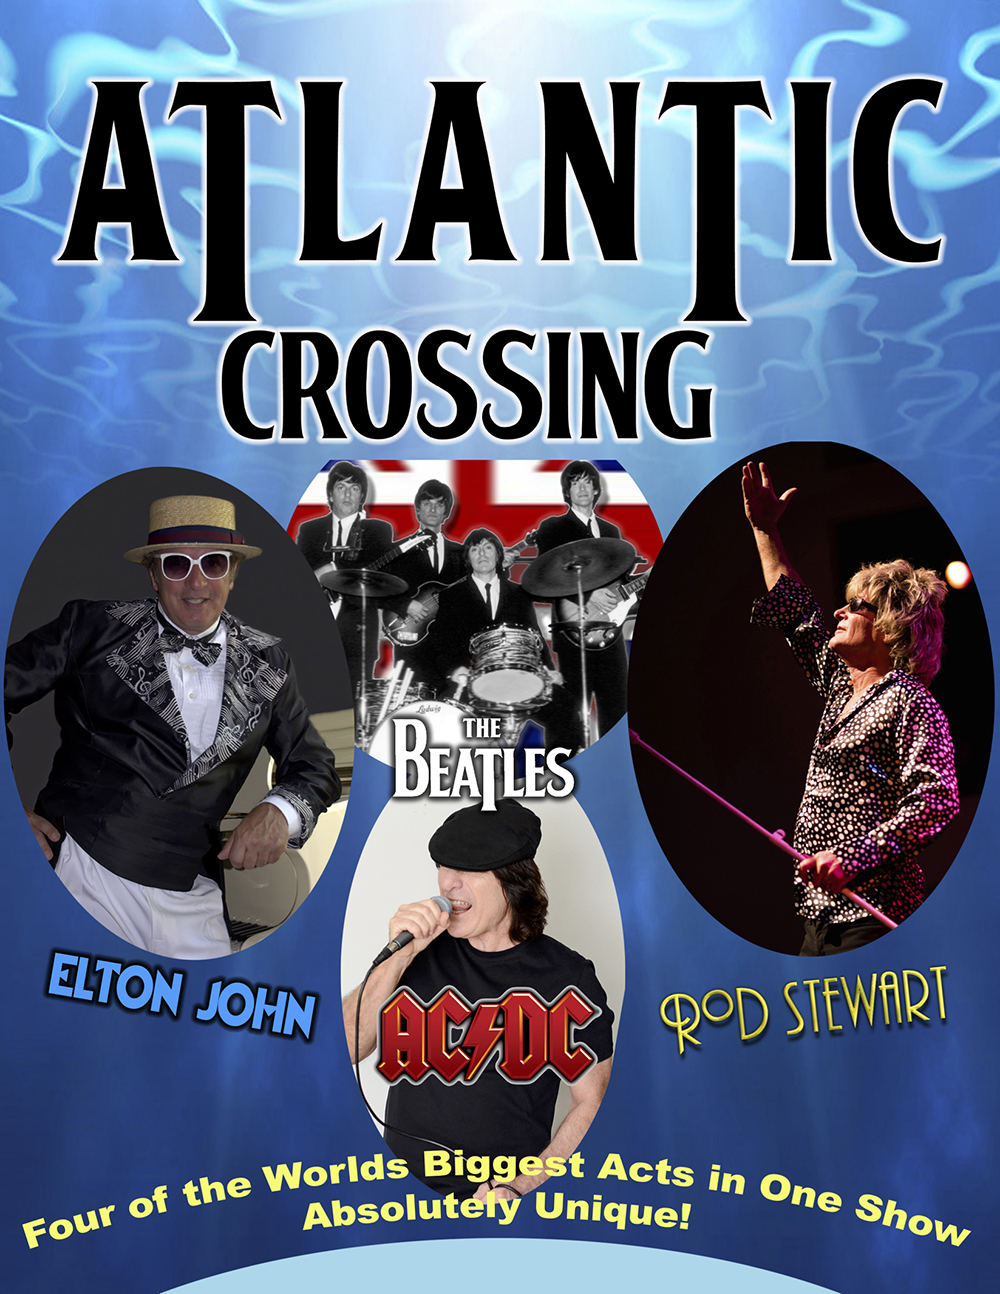 Atlantic crossing british invasion tribute